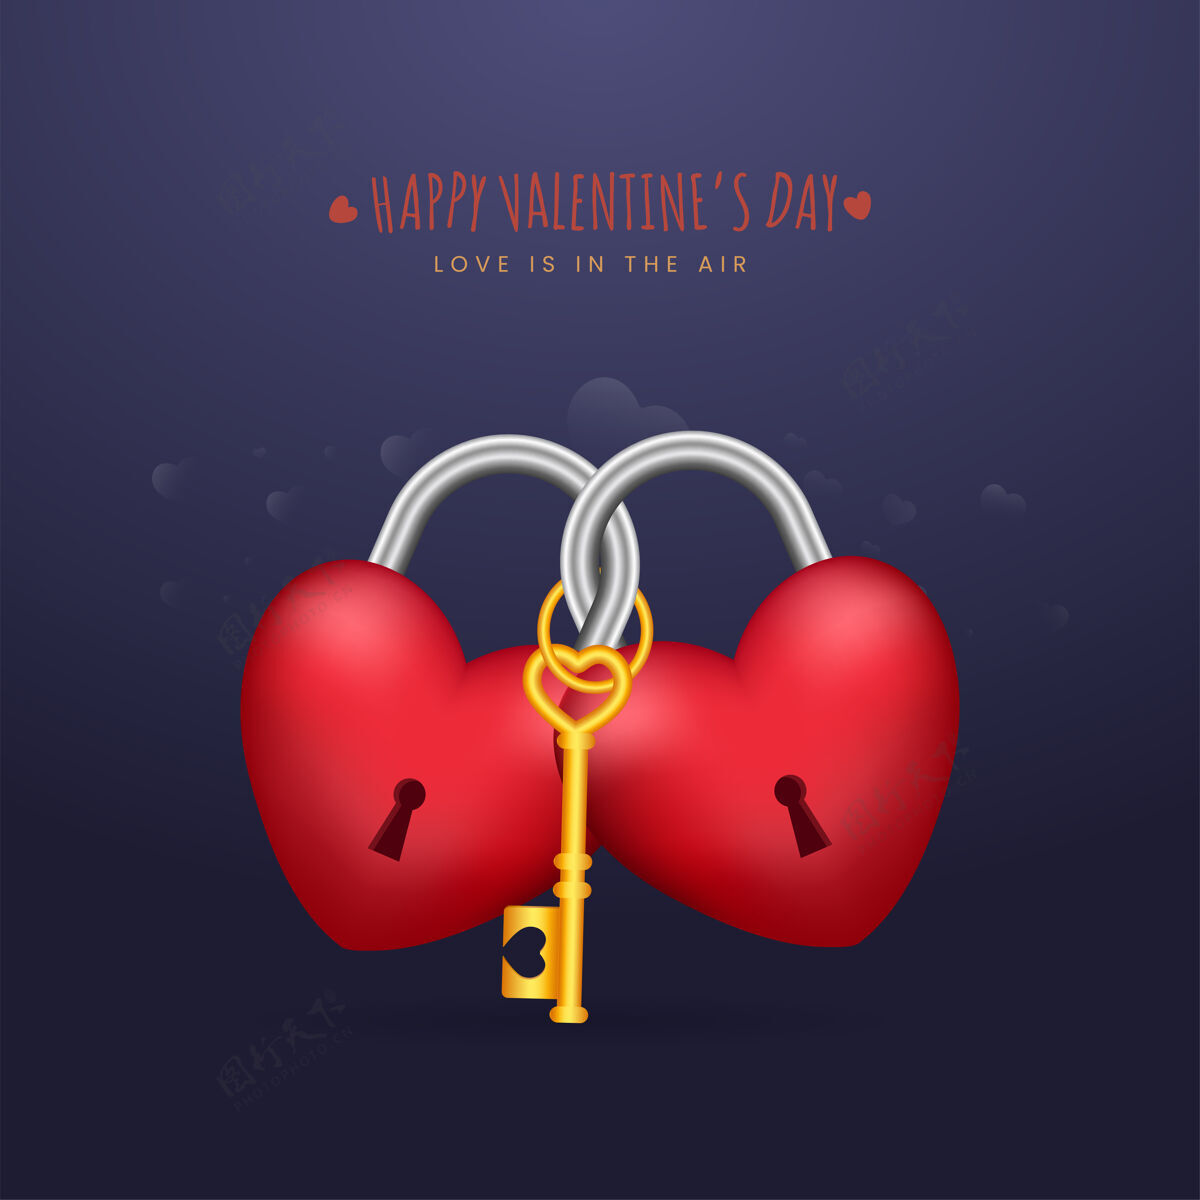 情人情人节快乐的概念与三维心形挂锁和金钥匙圣瓦伦丁节情侣爱